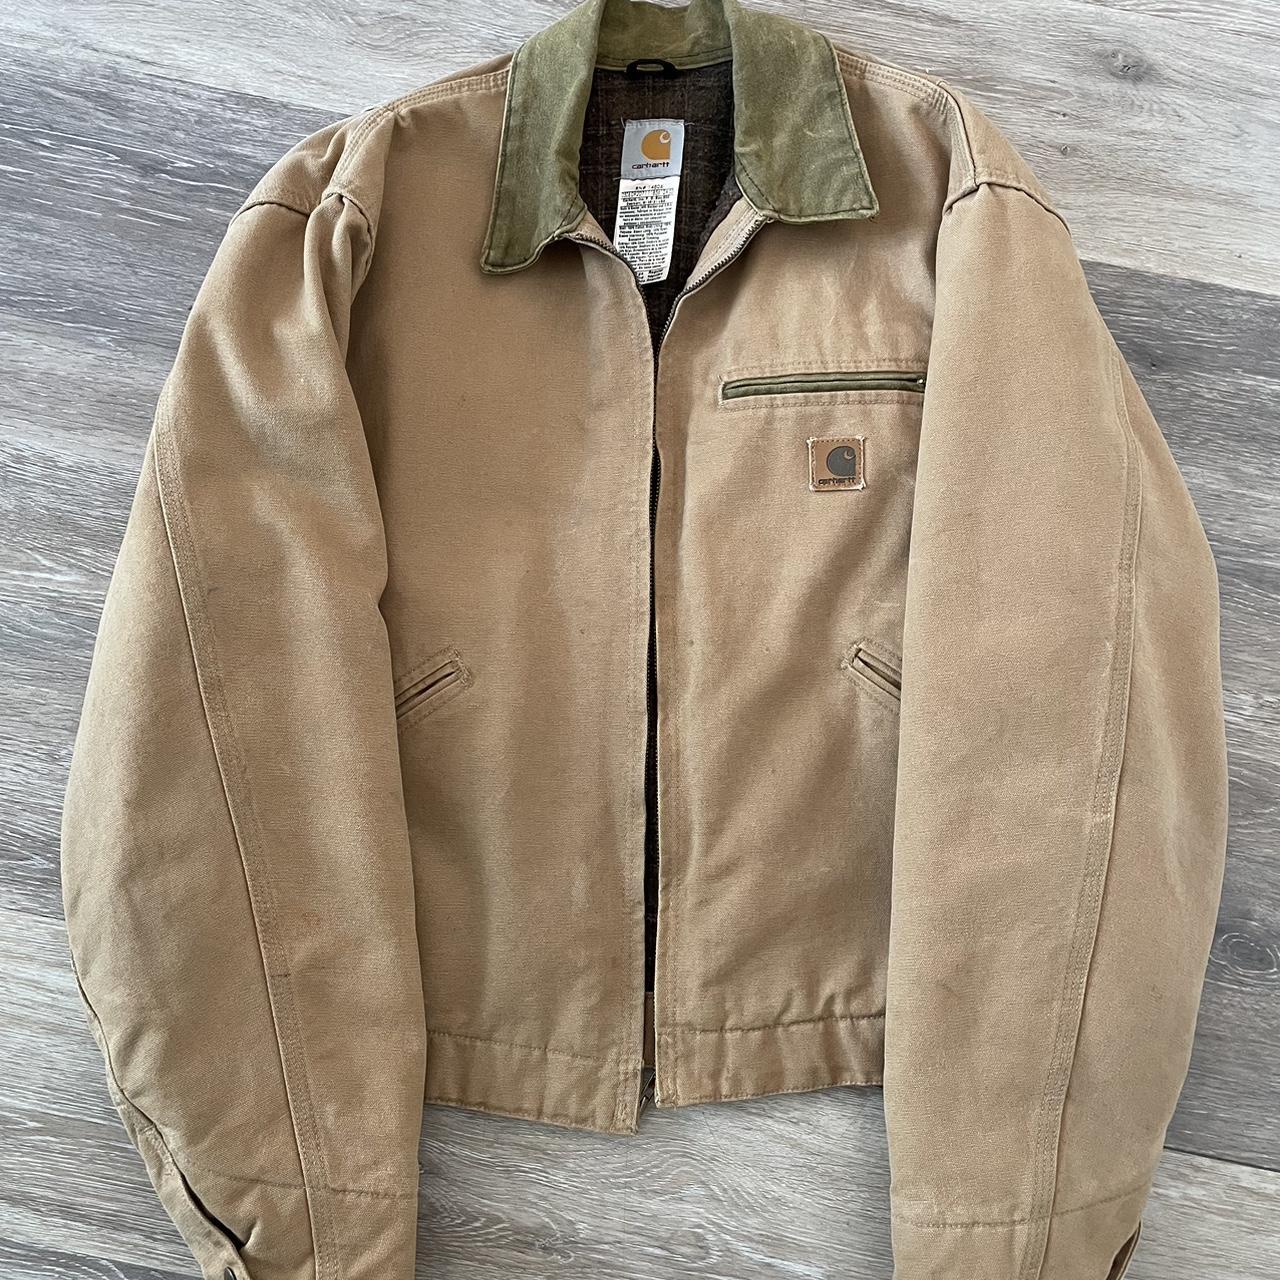 Beautiful Carhartt j97 “Detroit” jacket. Size is... - Depop